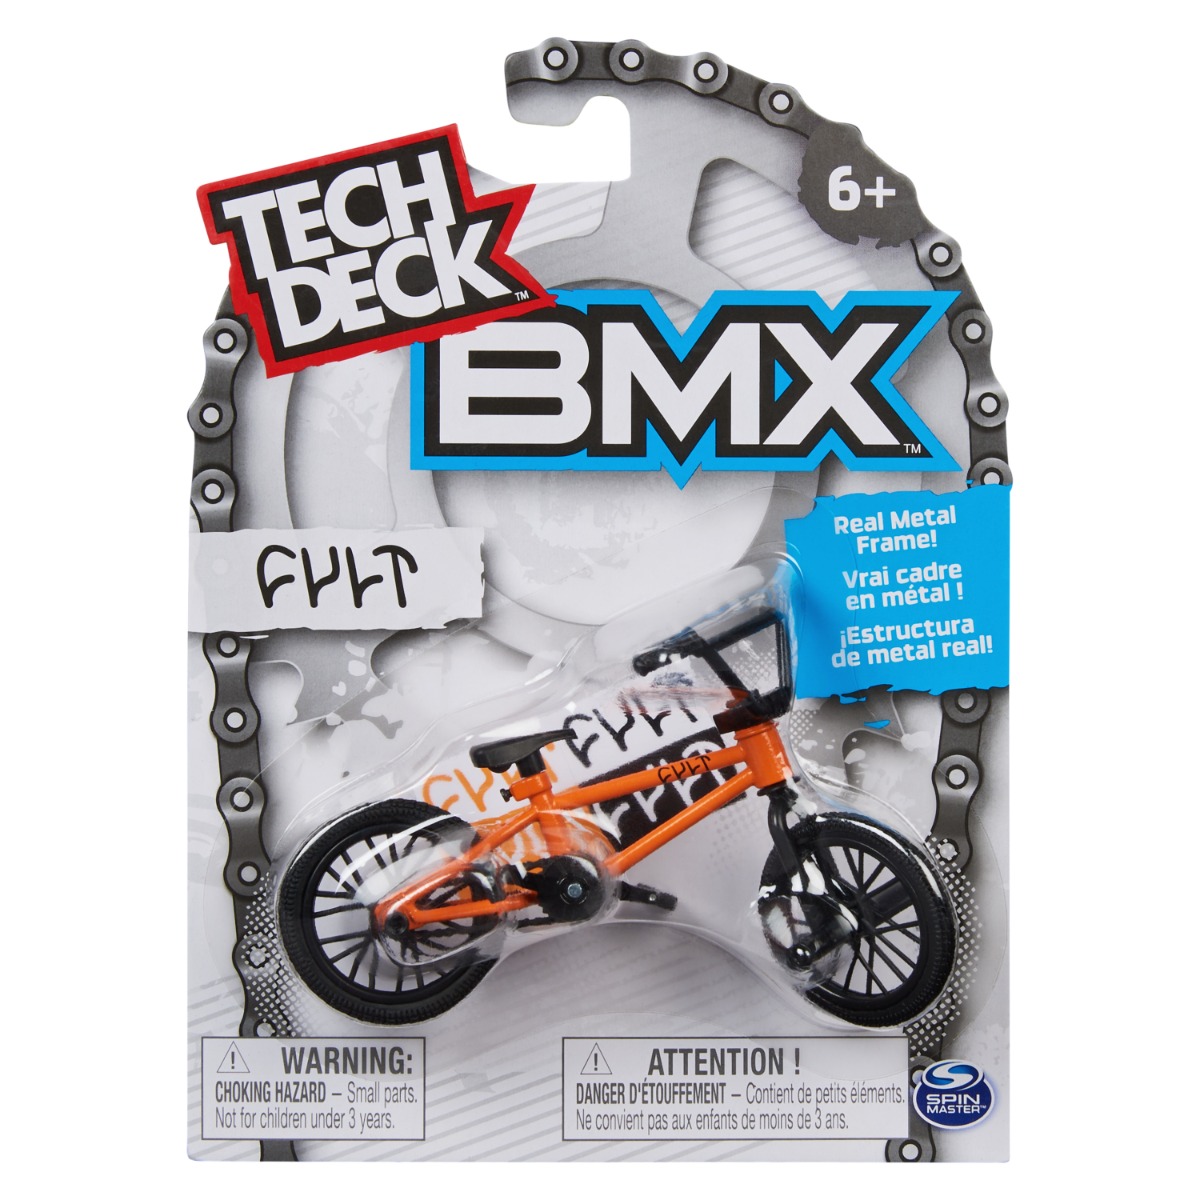 Mini BMX bike, Tech Deck, Cult, 20140828 Masinute 2023-09-21